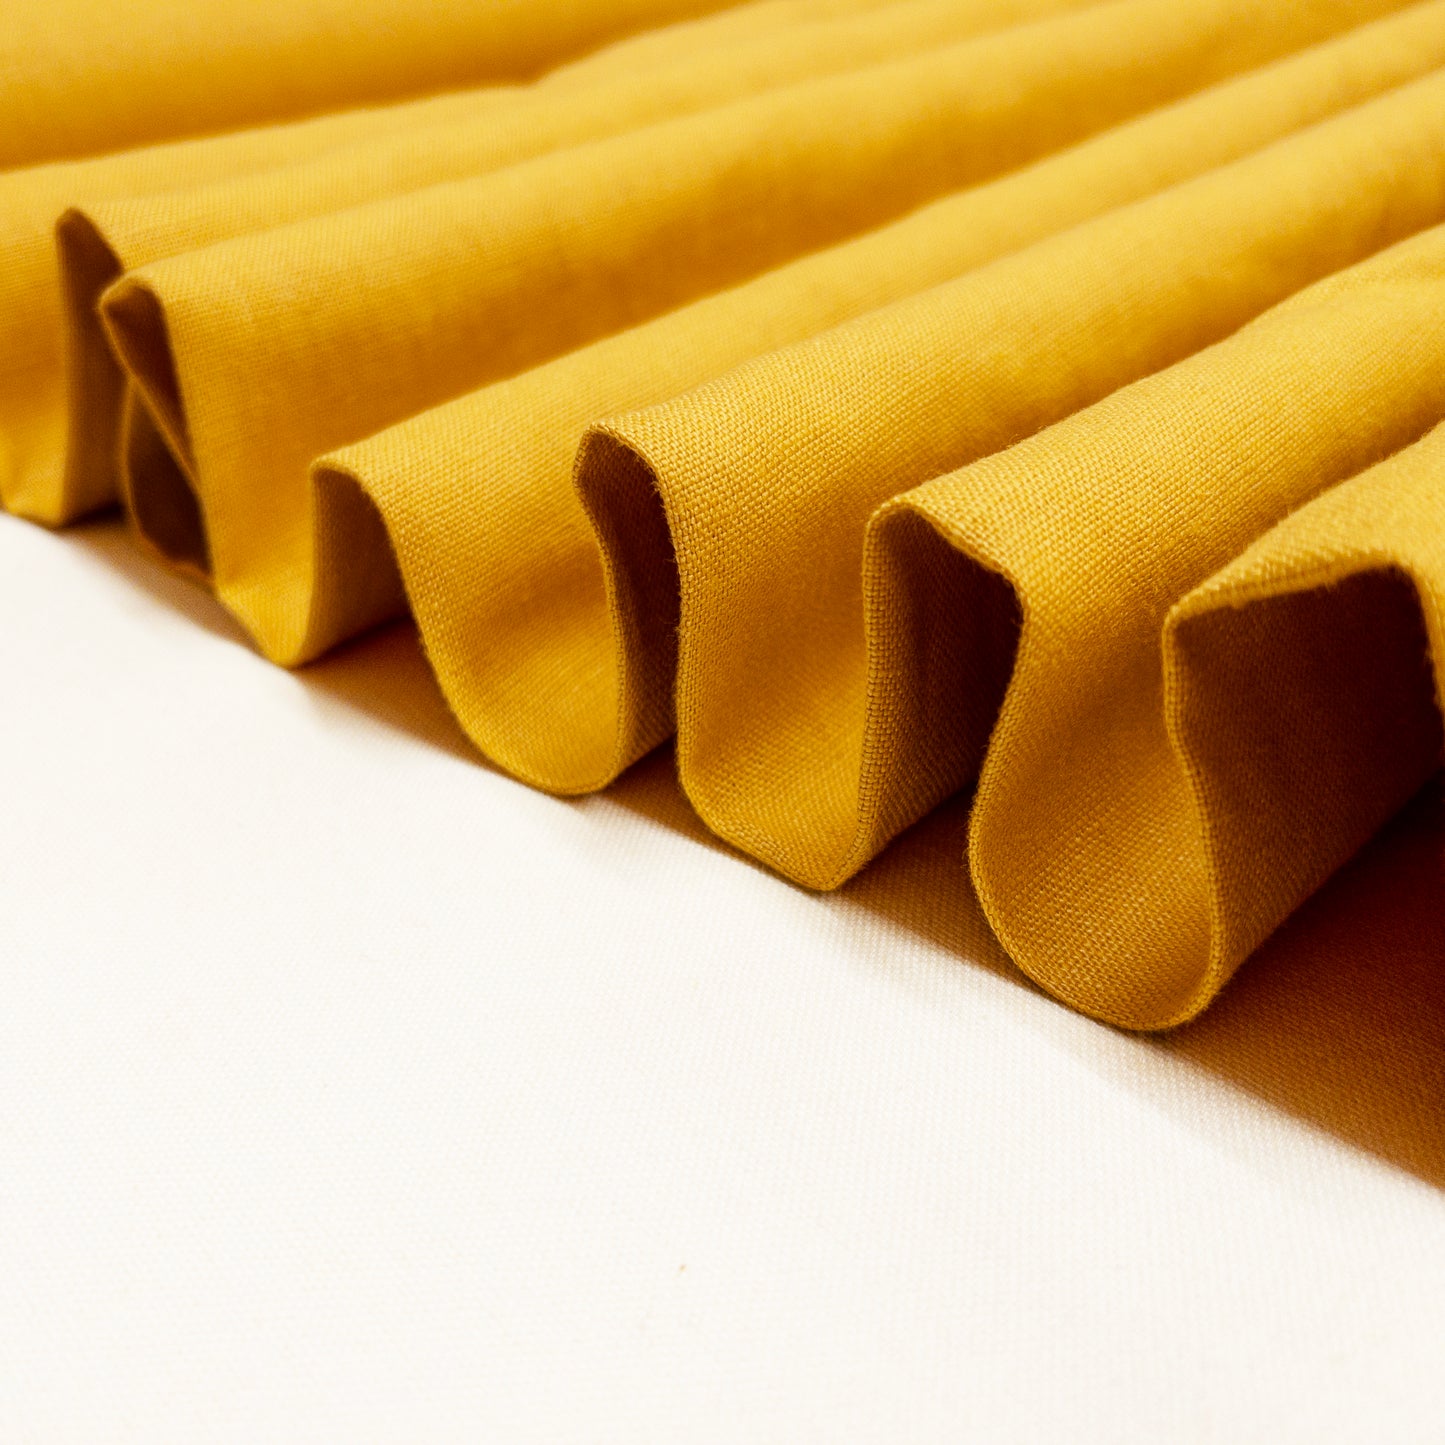 Medium Weight Linen in Mustard